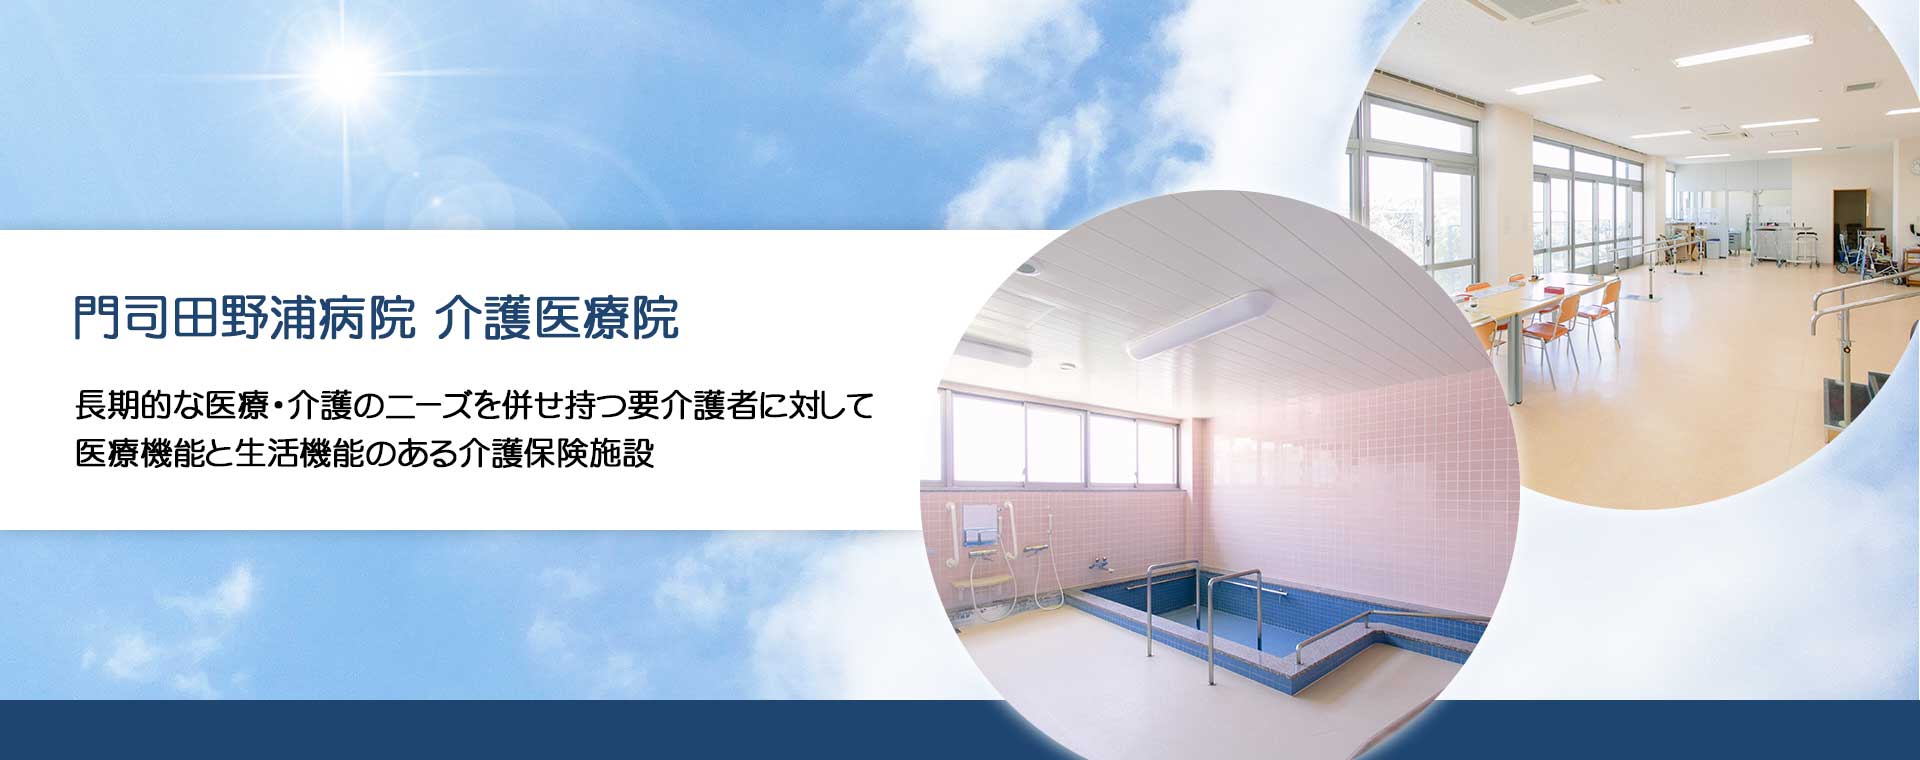 門司田野浦病院 介護医療院 長期的な医療・介護のニーズを併せ持つ要介護者に対して医療機能と生活機能のある介護保険施設